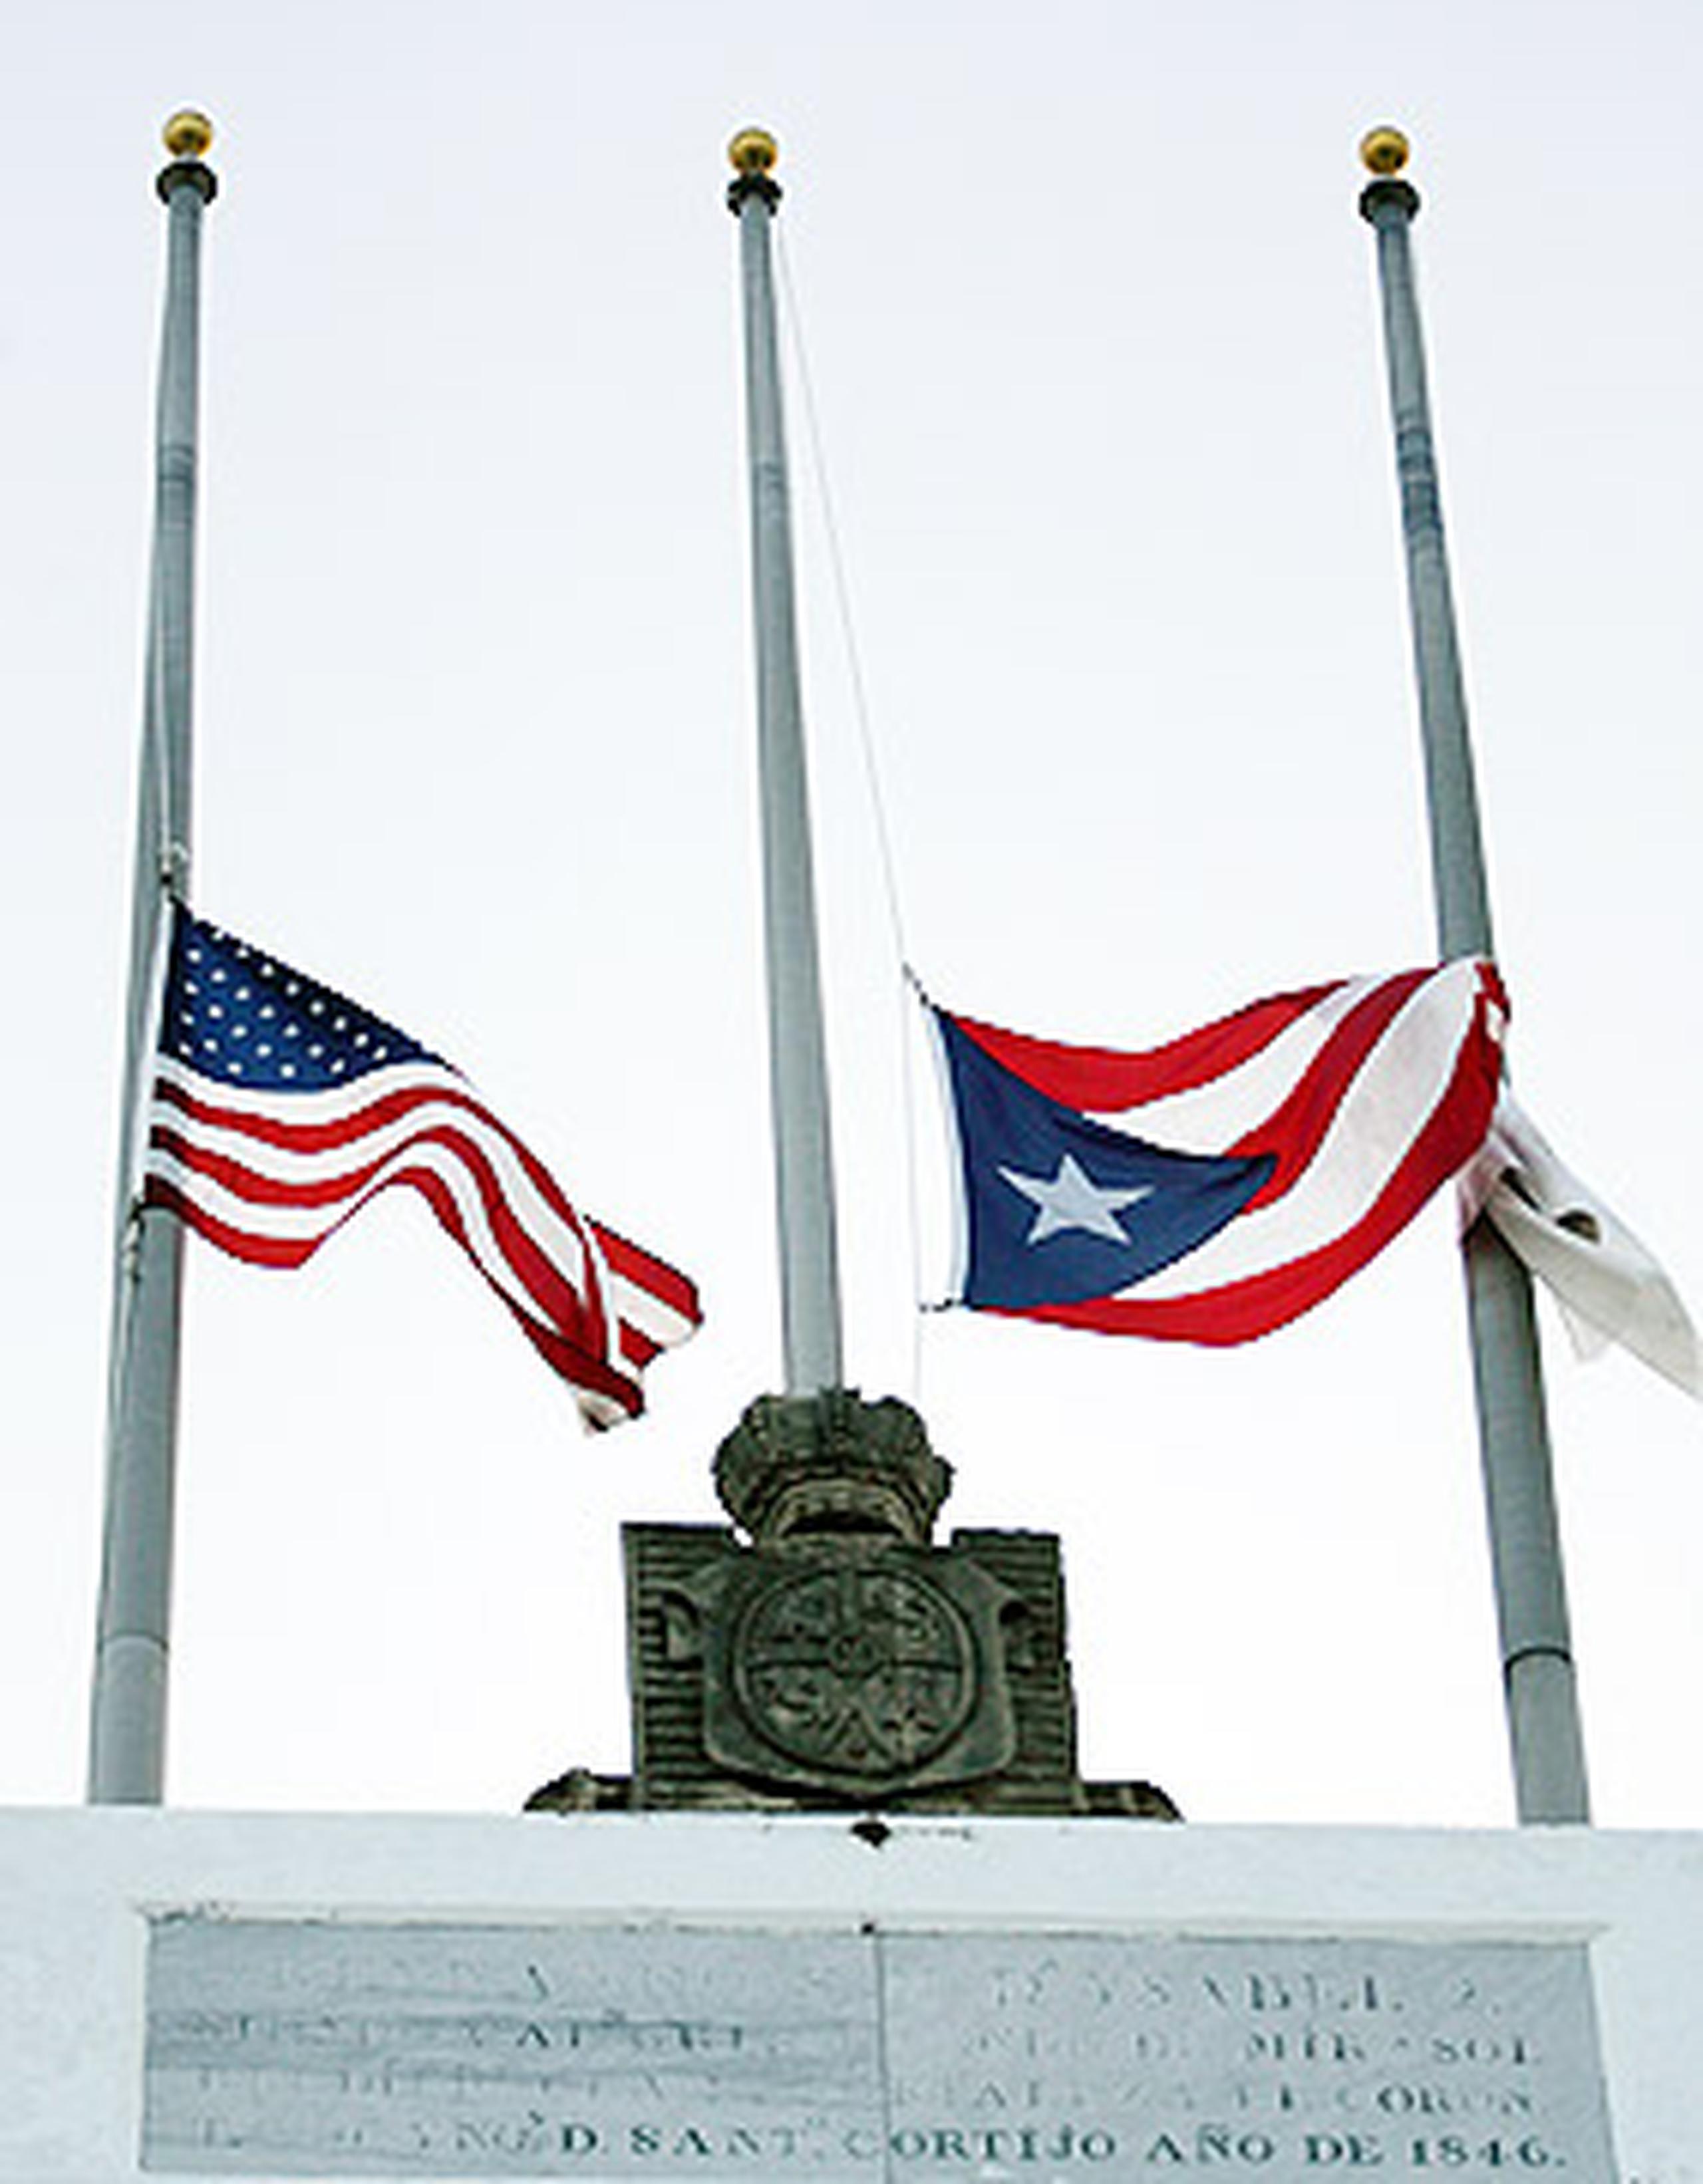 El gobernador Luis G. Fortuño ordenó que las banderas de Puerto Rico y Estados Unidos se izaran a media asta en los edificios públicos en honor a las víctimas del tiroteo de Arizona. (Archivo / END)